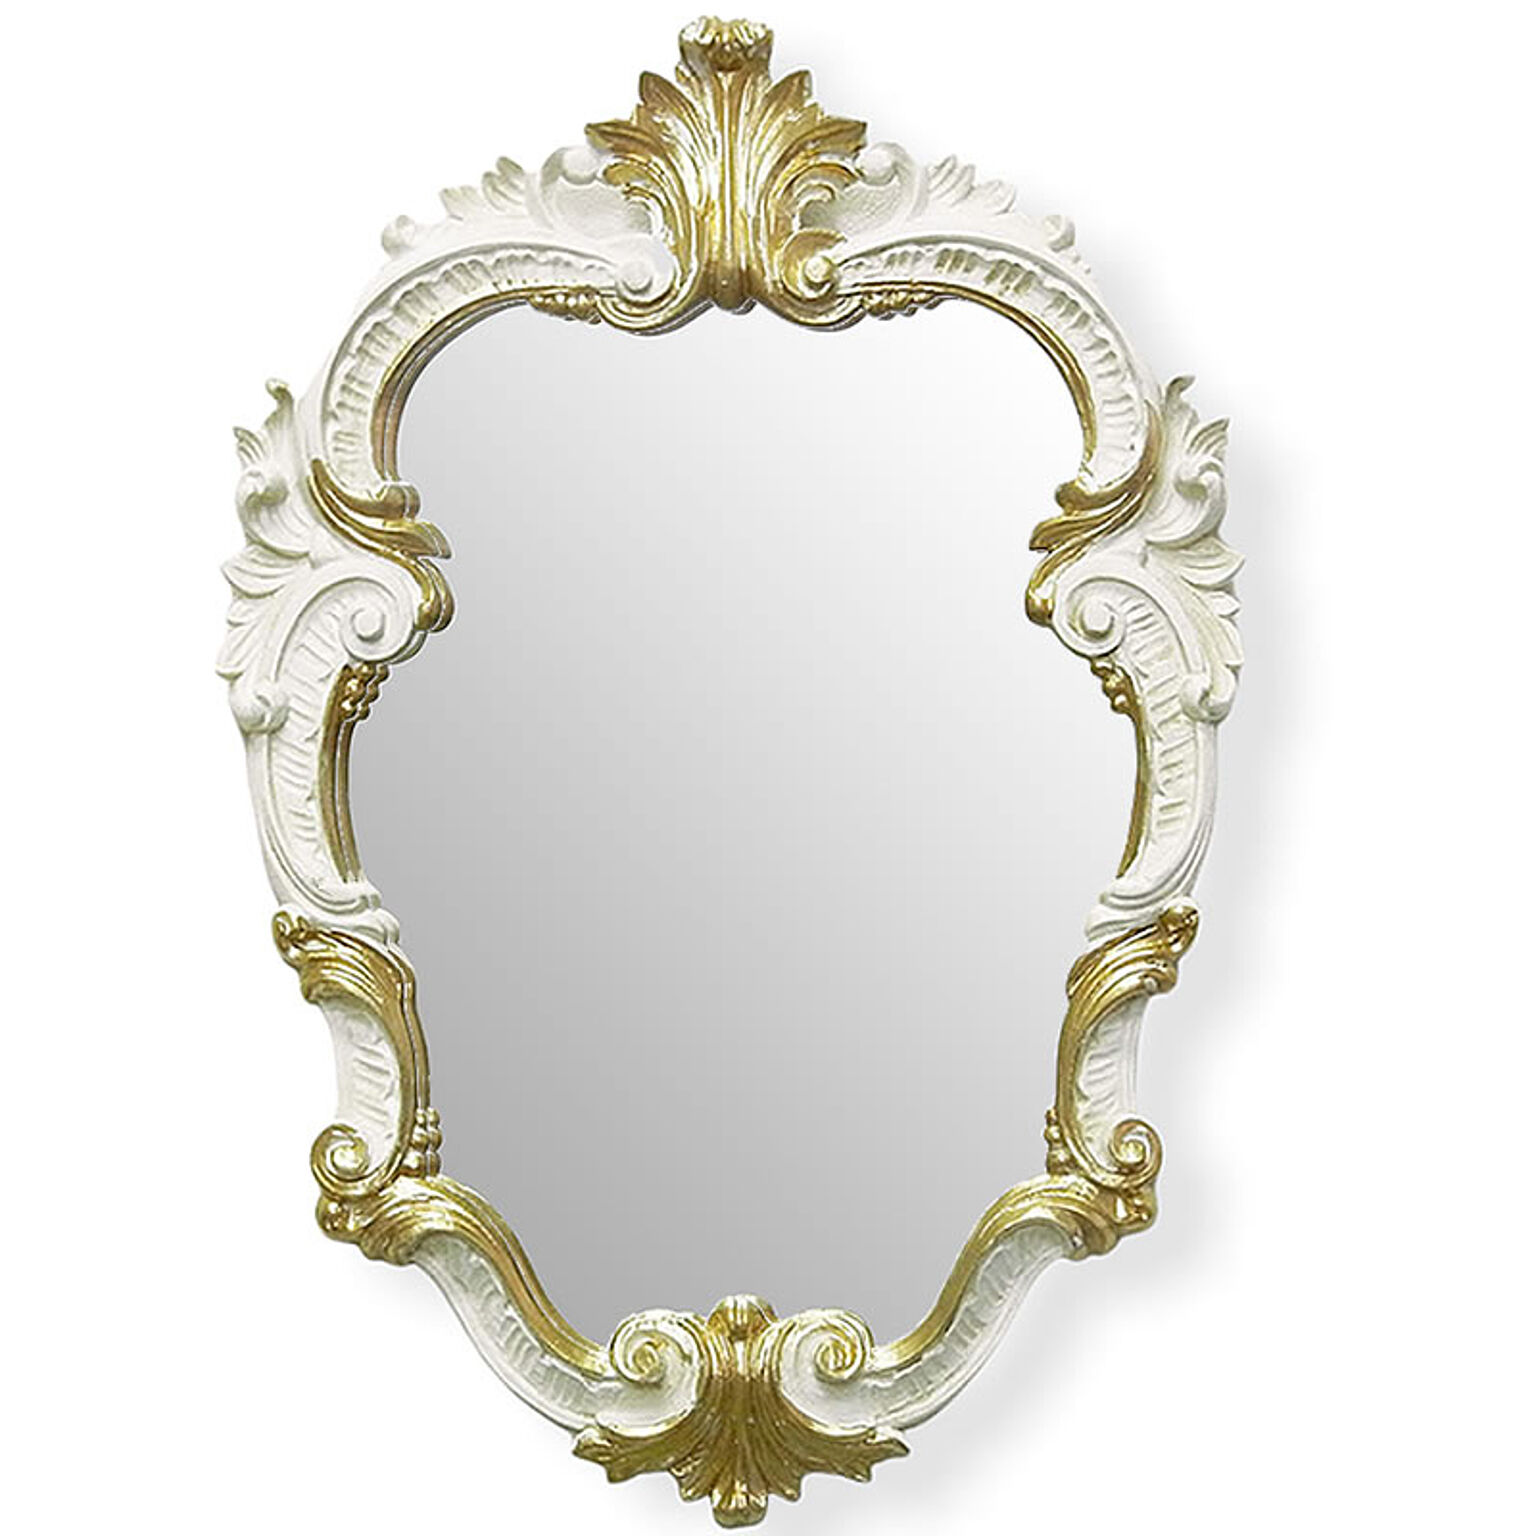 鏡 壁掛け イタリア製 クラシックミラー Mirror アイボリー ユーロマルキ 通販 家具とインテリアの通販【RoomClipショッピング】